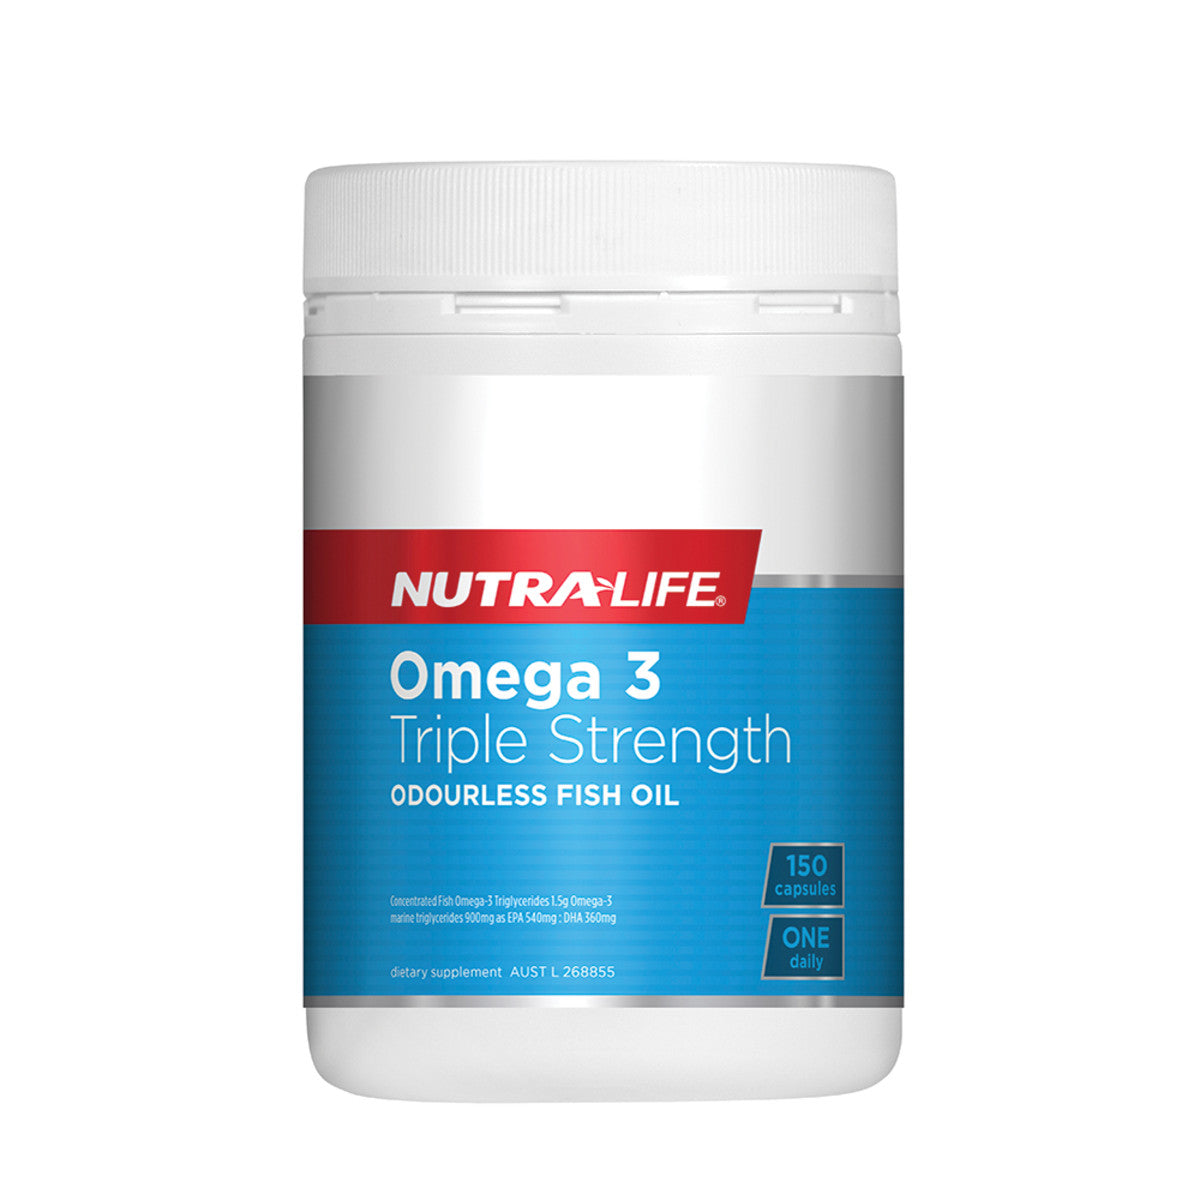 NutraLife - Triple Strength Omega 3 (Odourless Fish Oil)